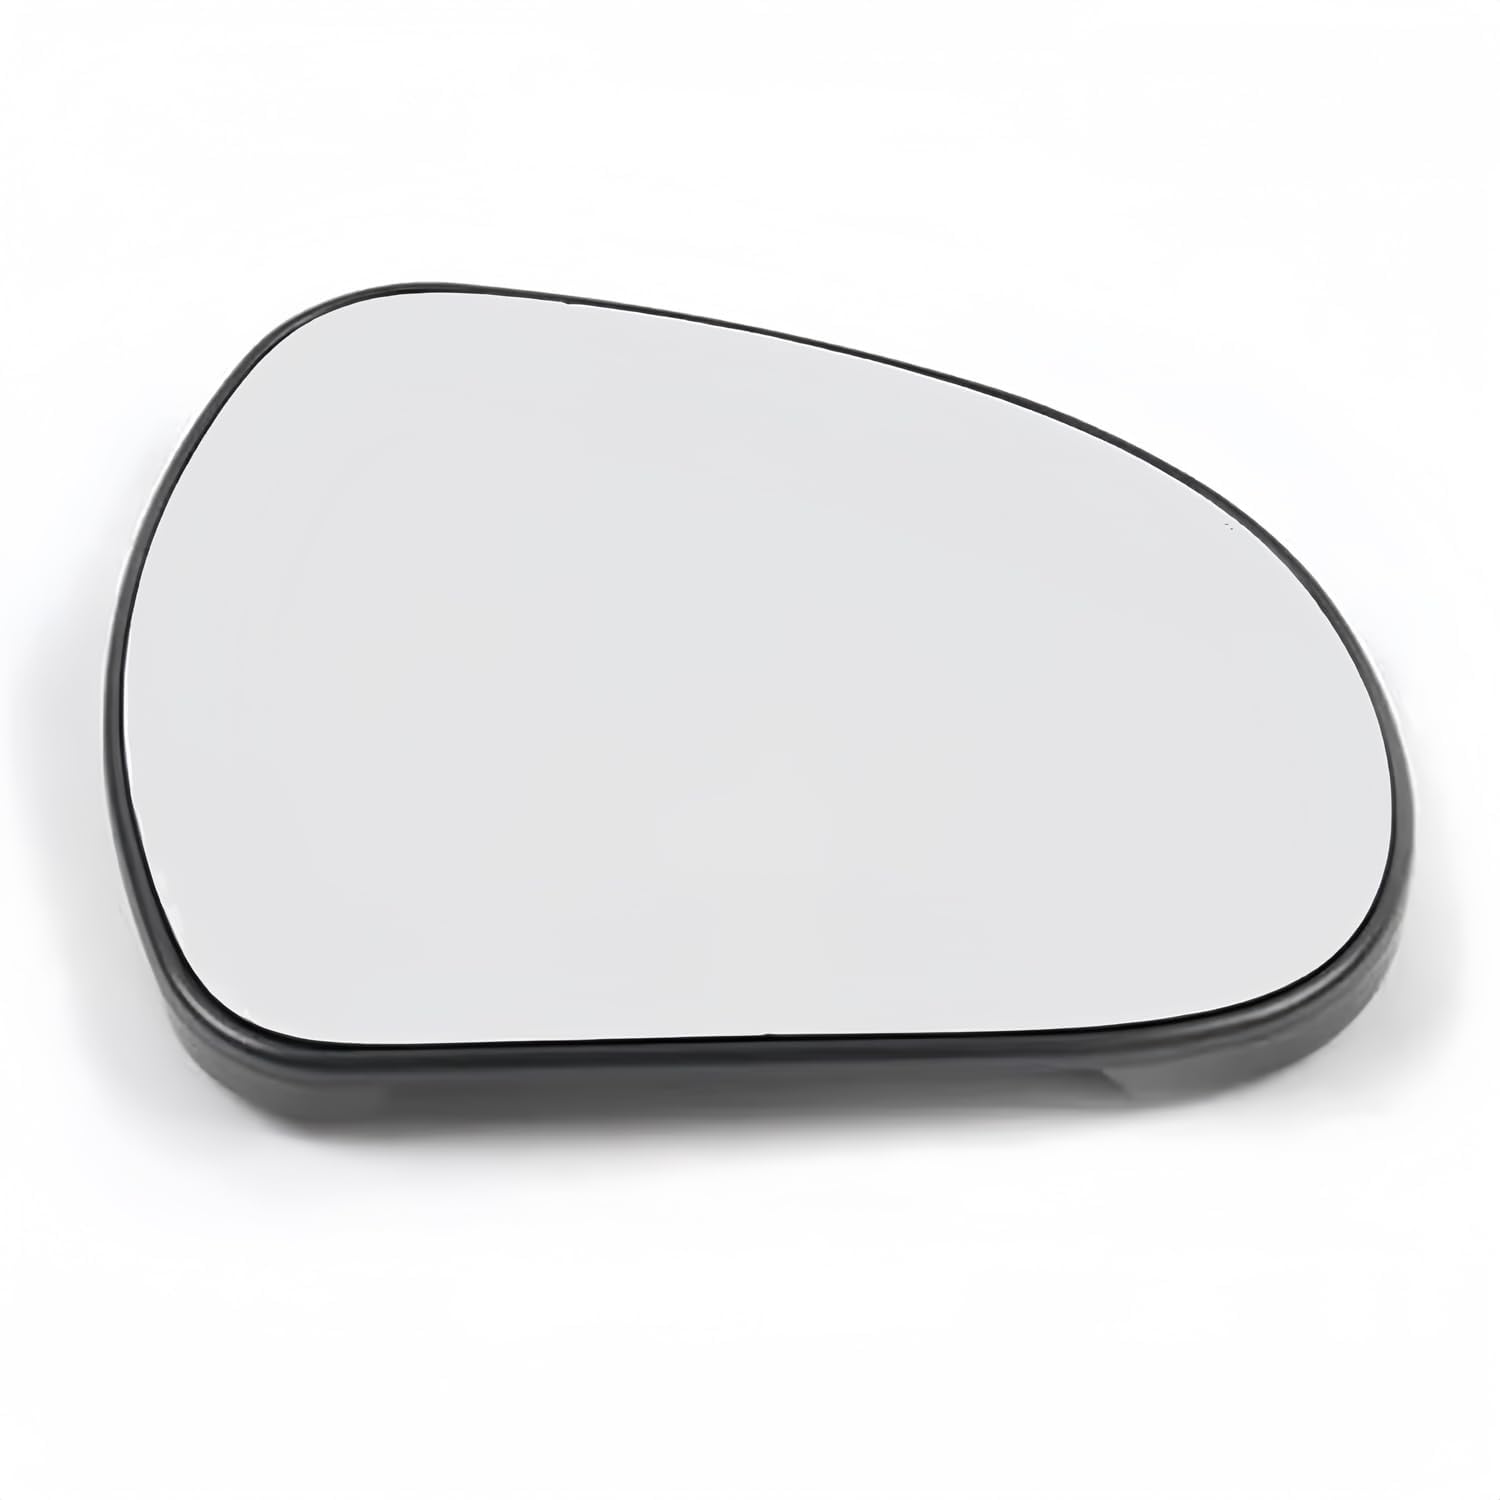 für Peugeot 207 2006-2012 Spiegelglas Beheizbar Außenspiegelglas Rückfahrglas,Right von KFDEGYJJ